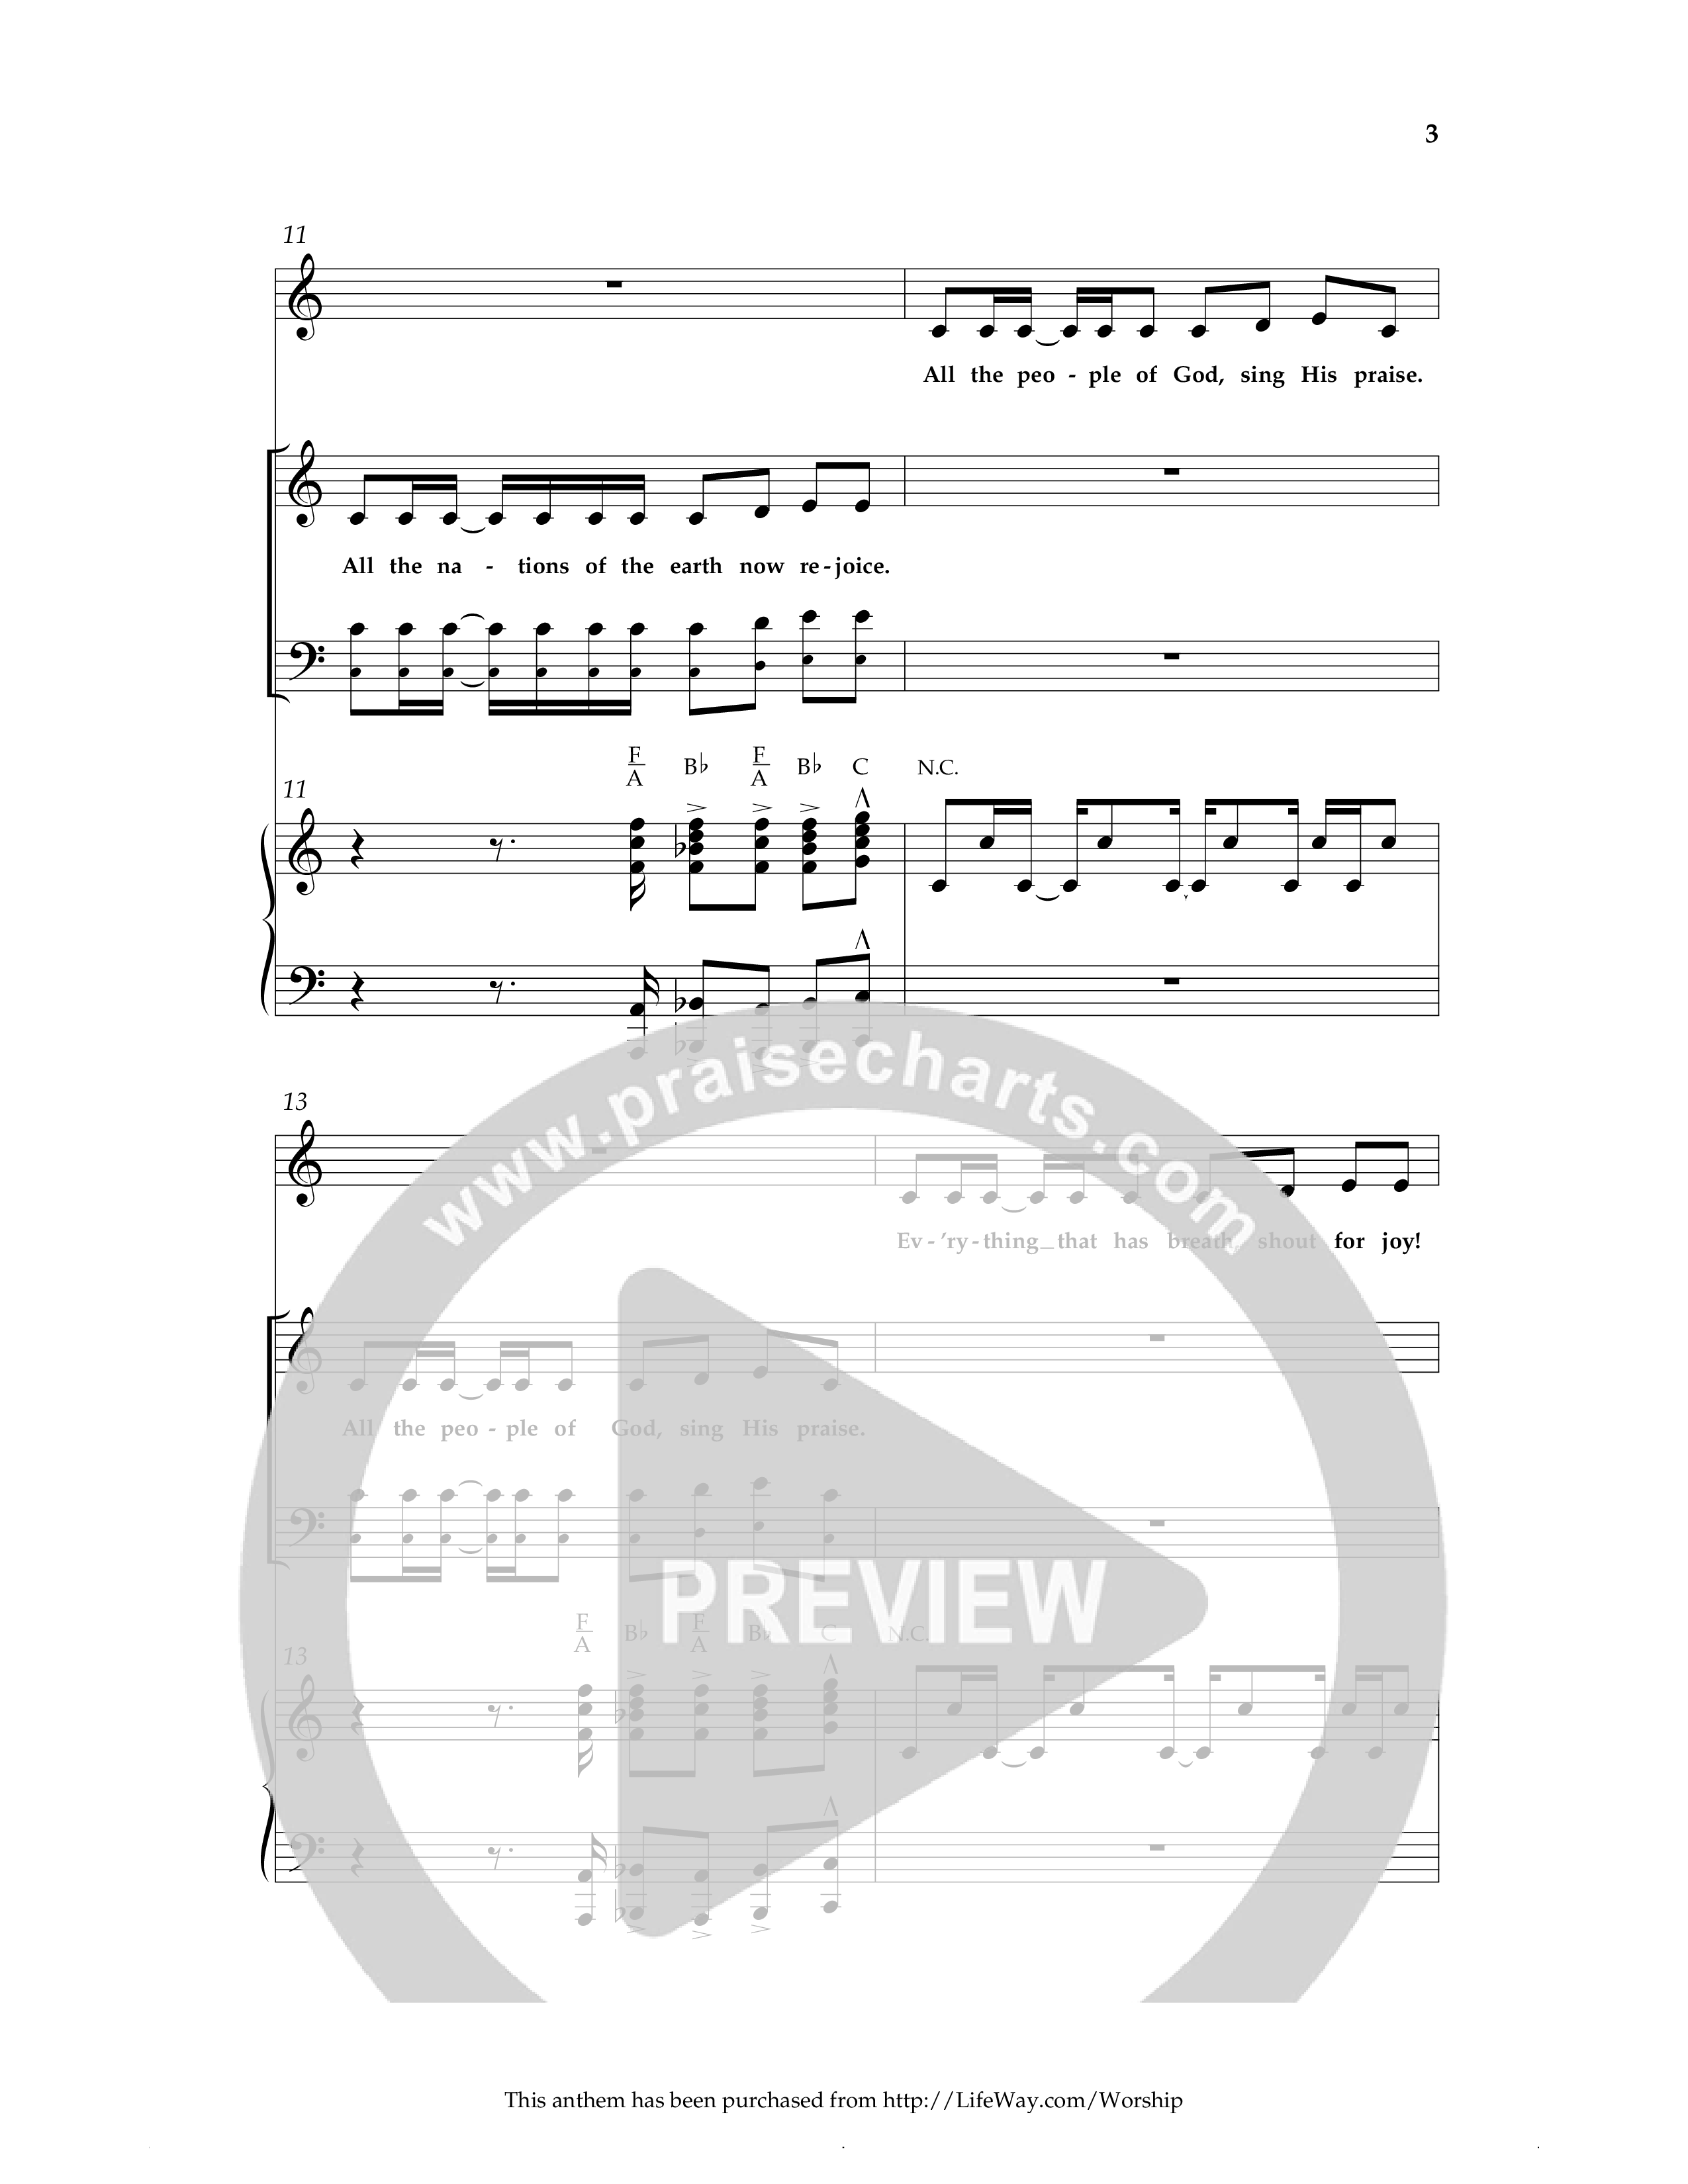 Excellent (Choral Anthem SATB) Anthem (SATB/Piano) (Lifeway Choral / Arr. Cliff Duren)